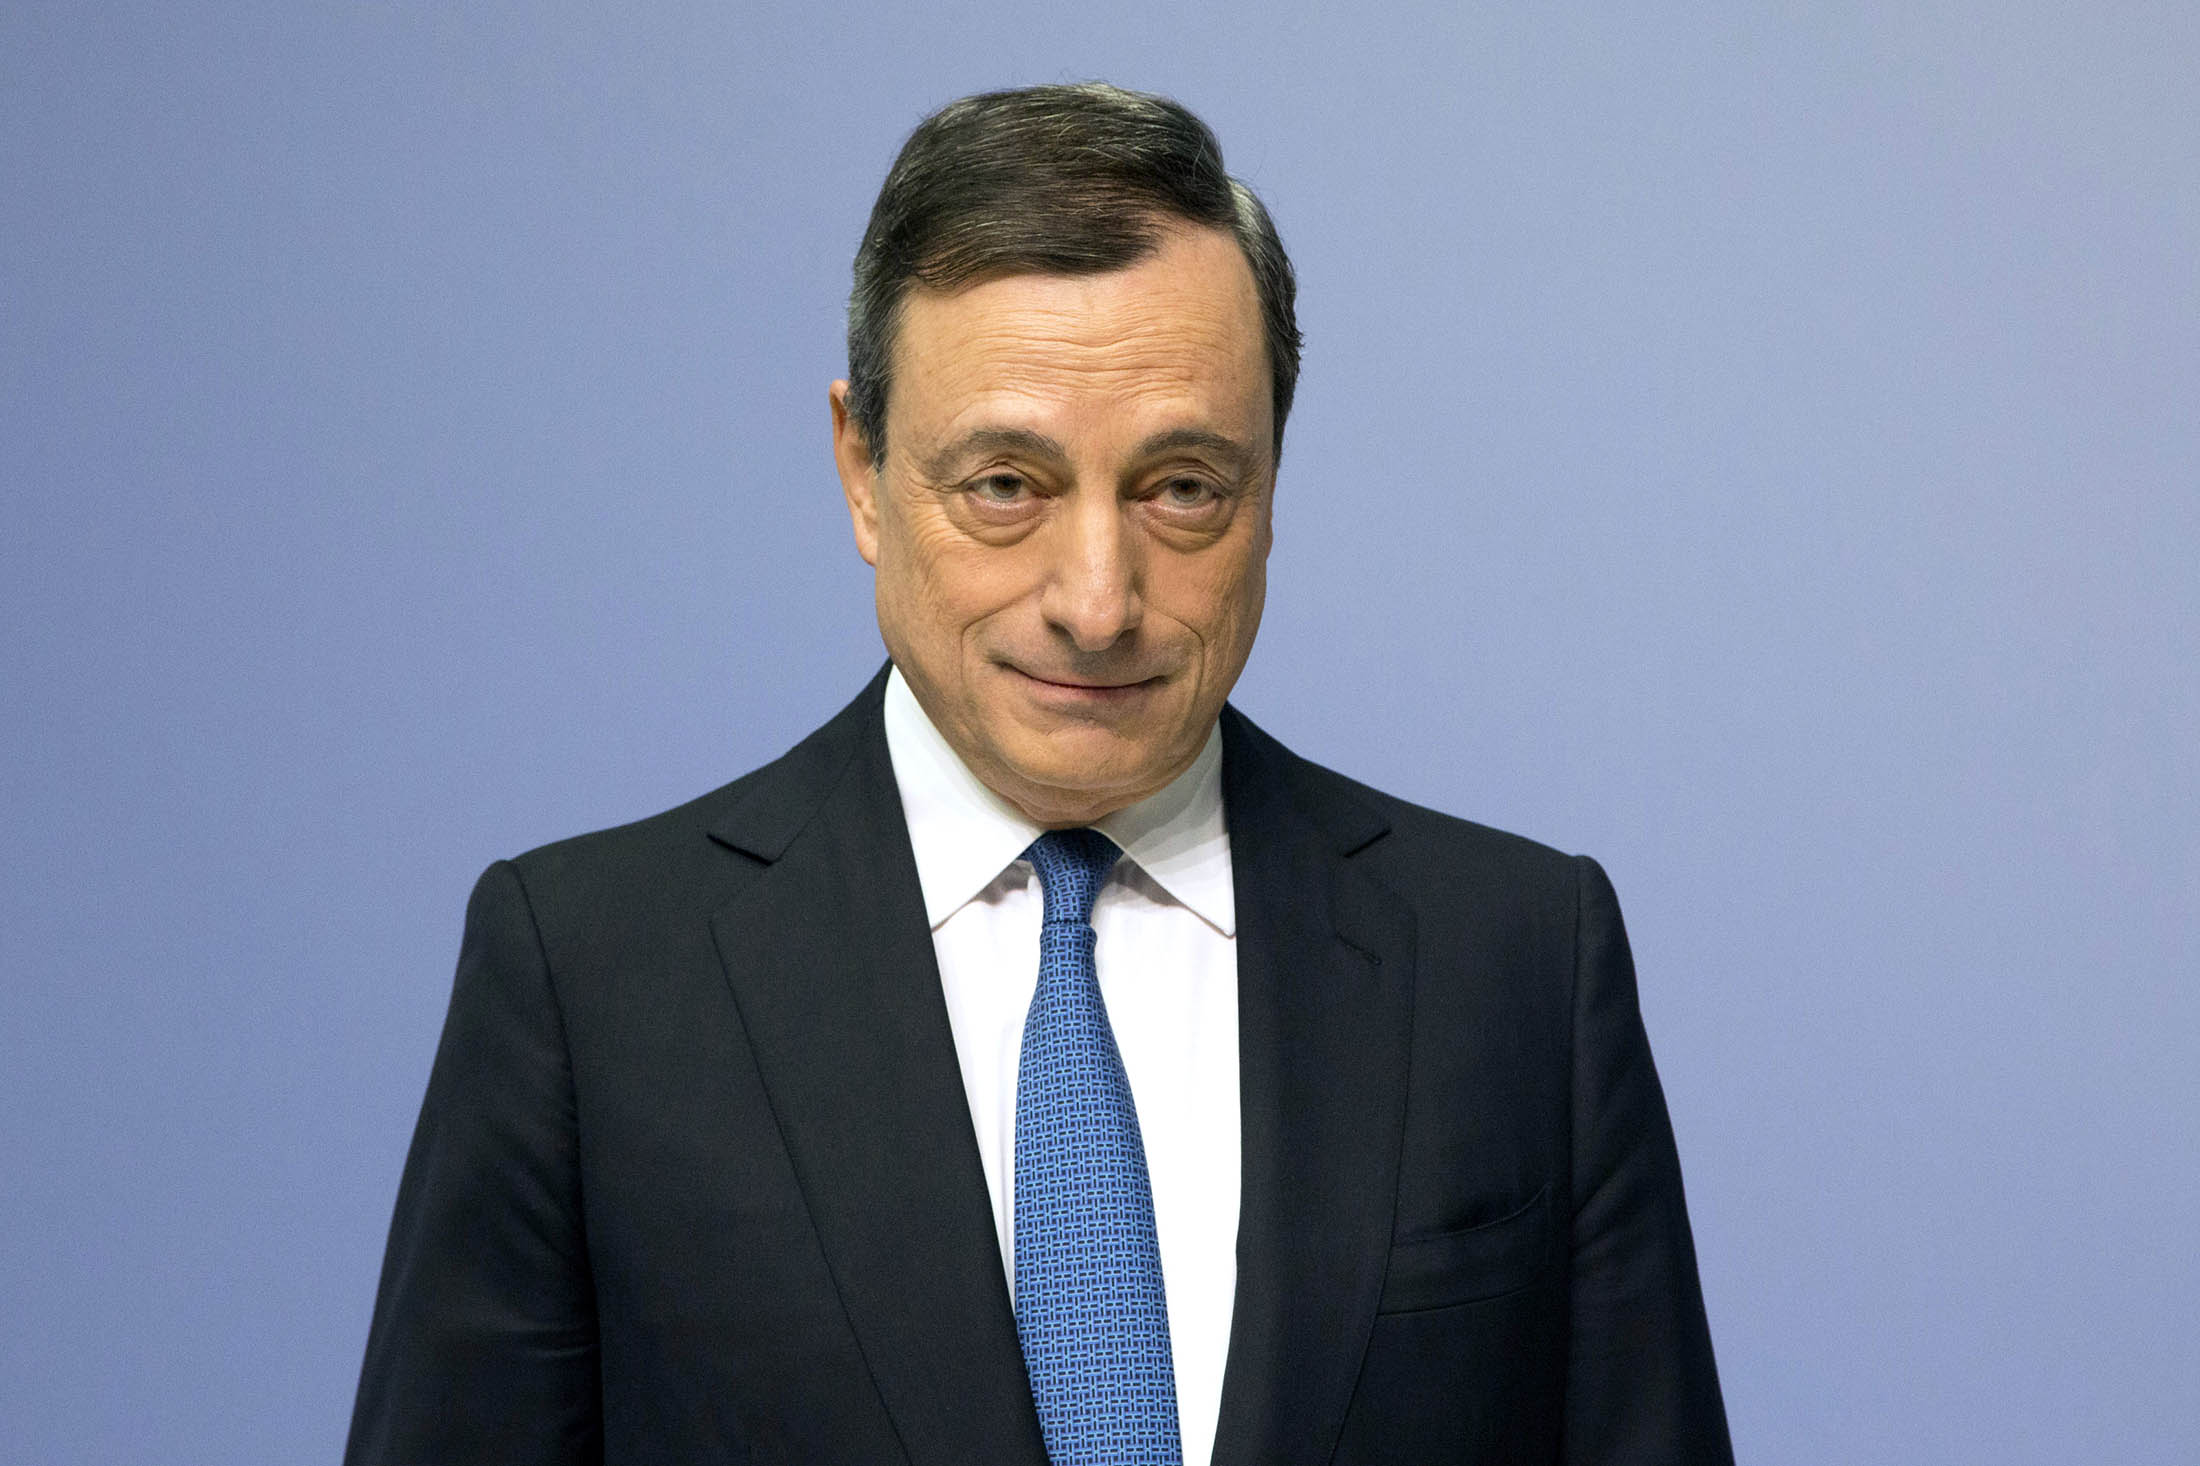 Mario Draghi, president of the European Central Bank.
